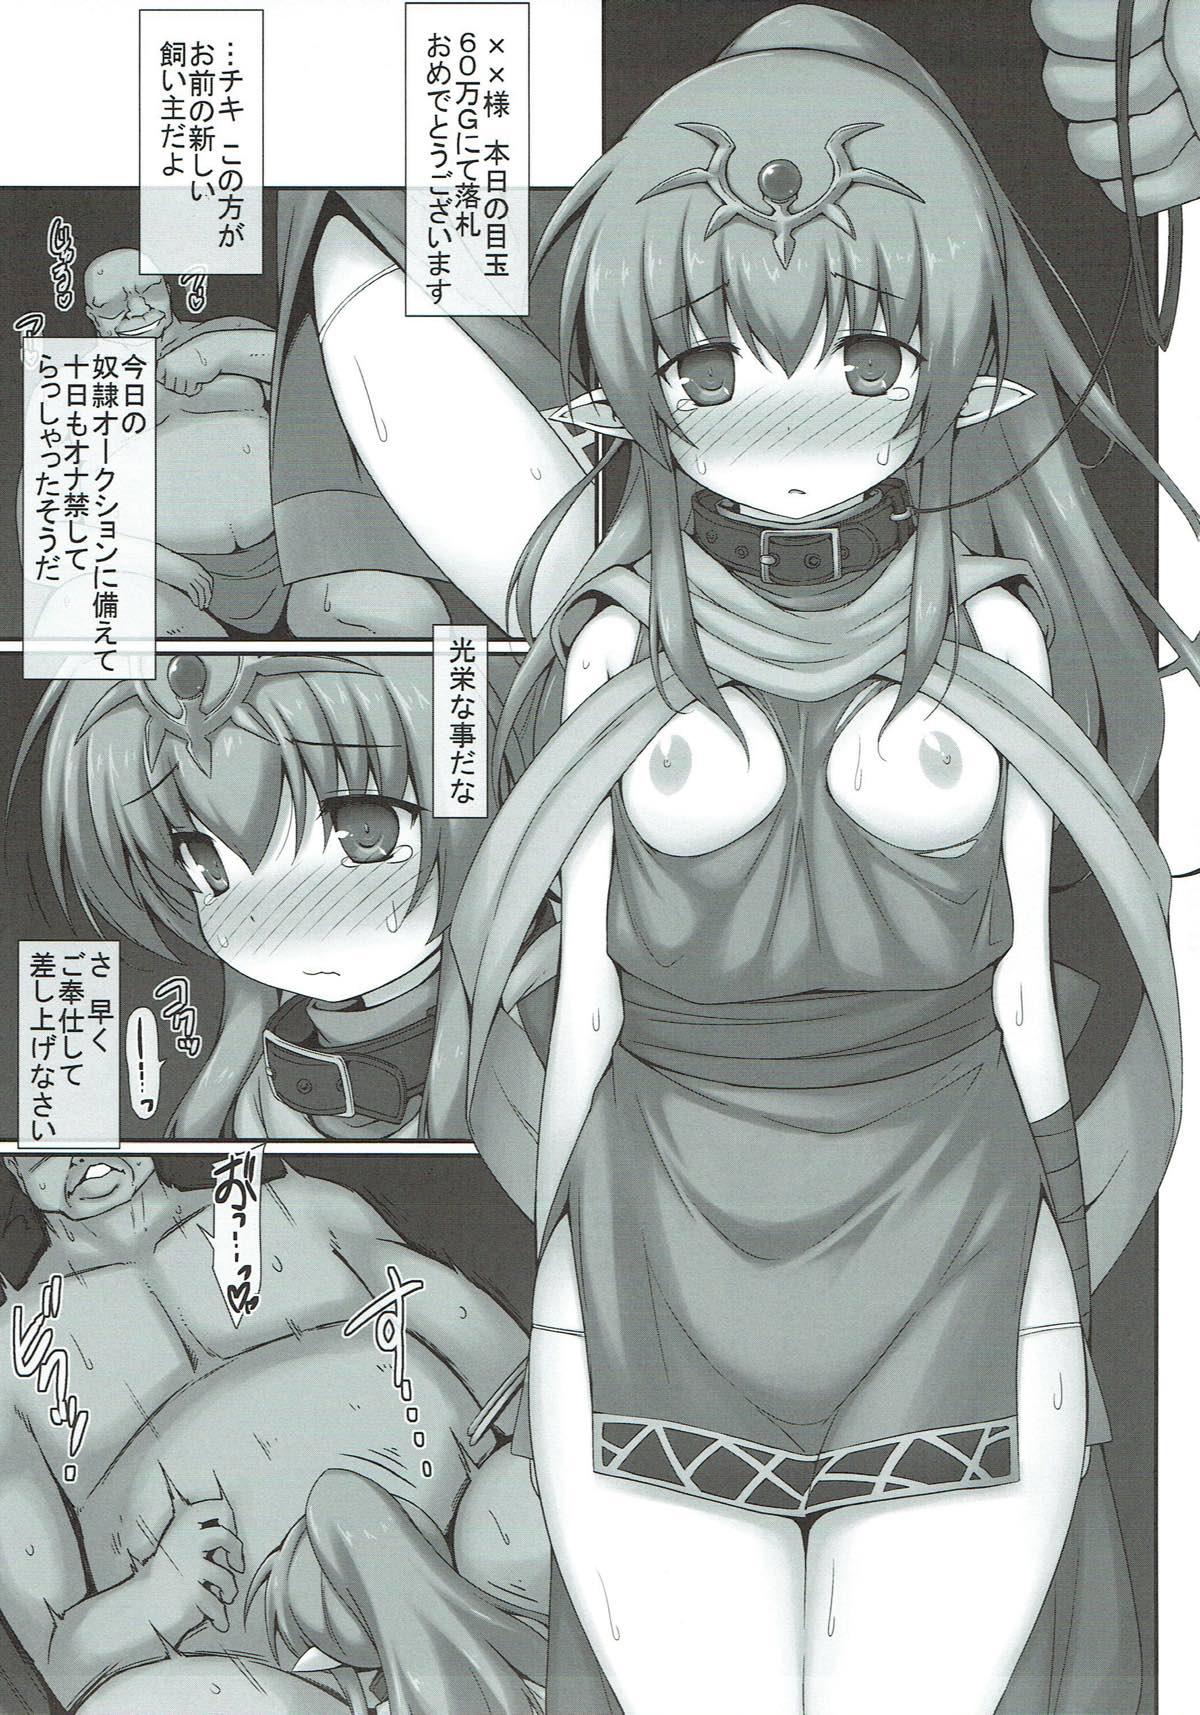 Sexy Girl Koi Omae no Kainushi ga Kimatta zo - Fire emblem awakening Casa - Page 2